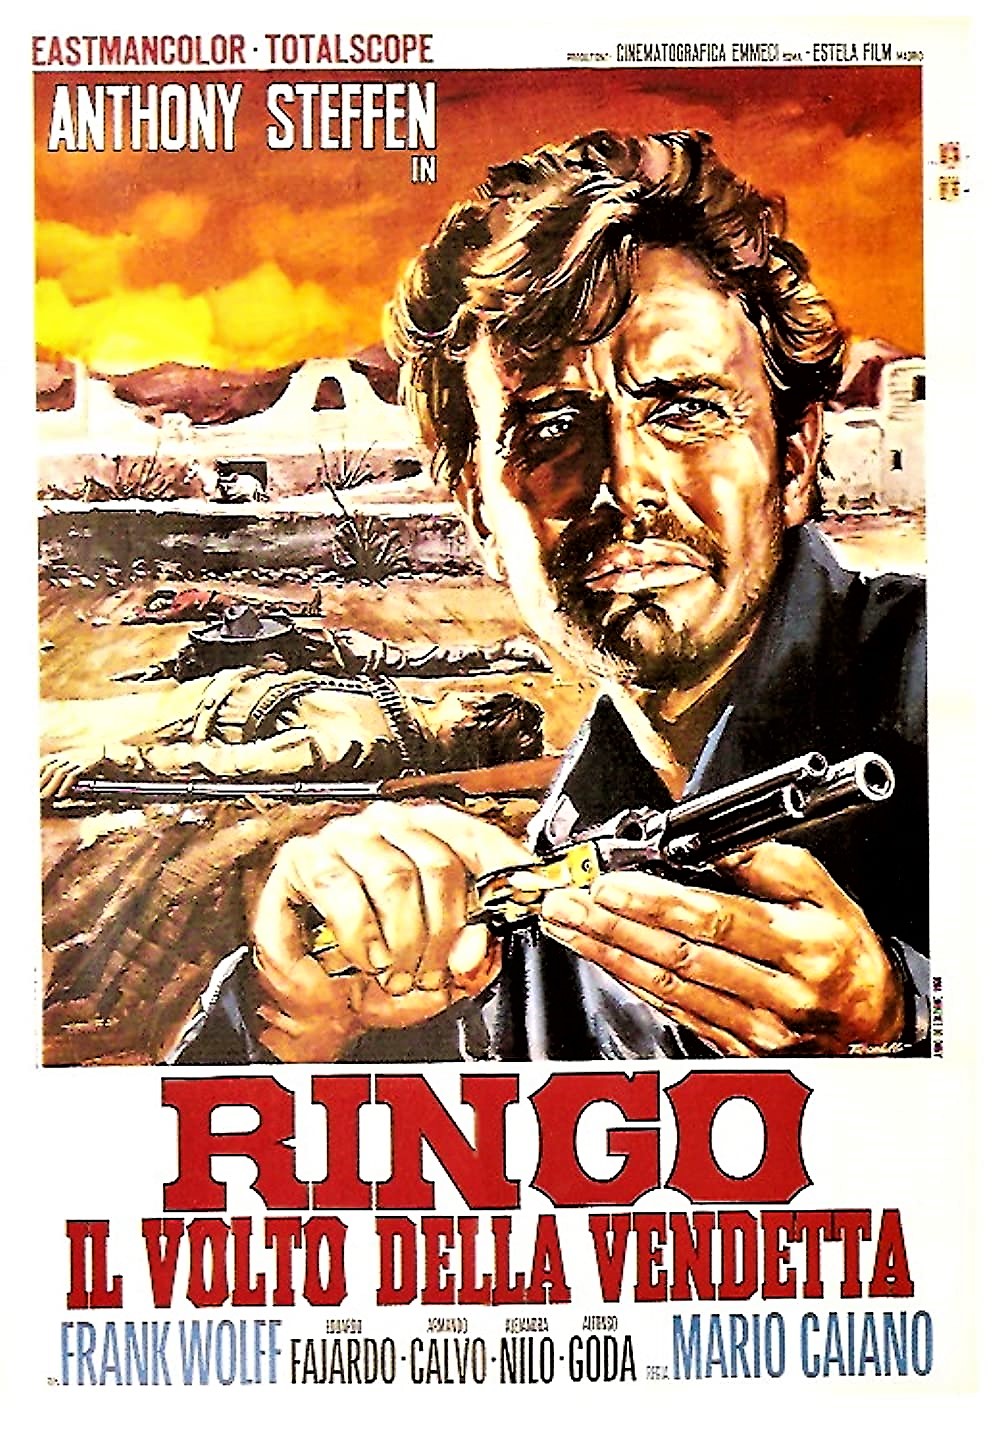 Ringo the Face of Revenge movie poster